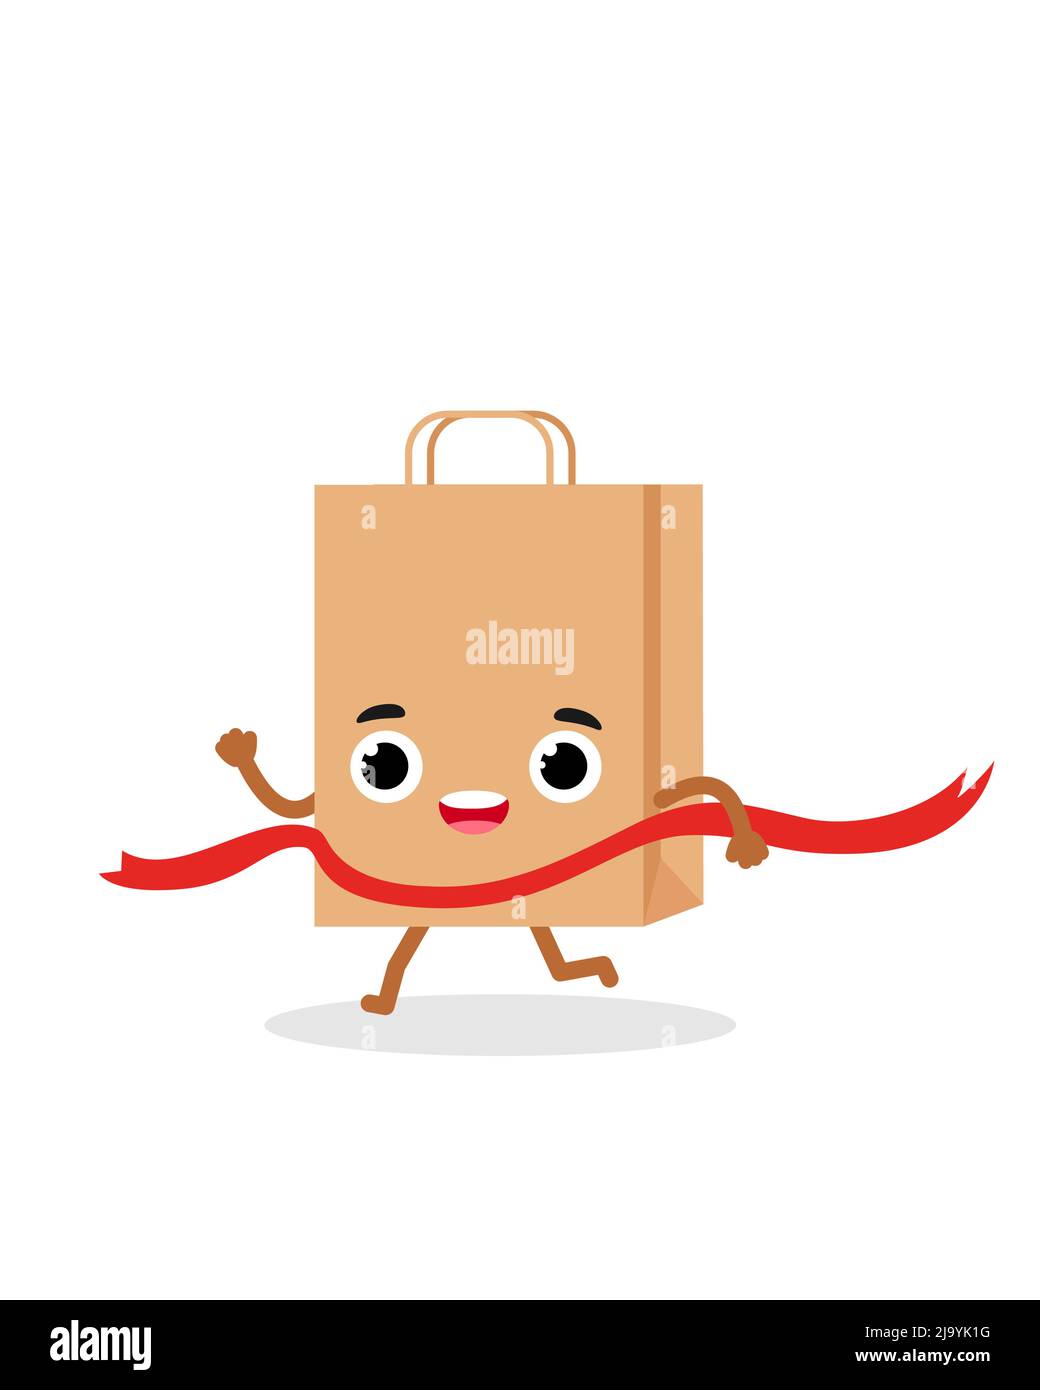 Papier Einkaufstasche Emotionen Charakter der Gewinner läuft an der Ziellinie. Emoji-Vektorgrafik Stock Vektor